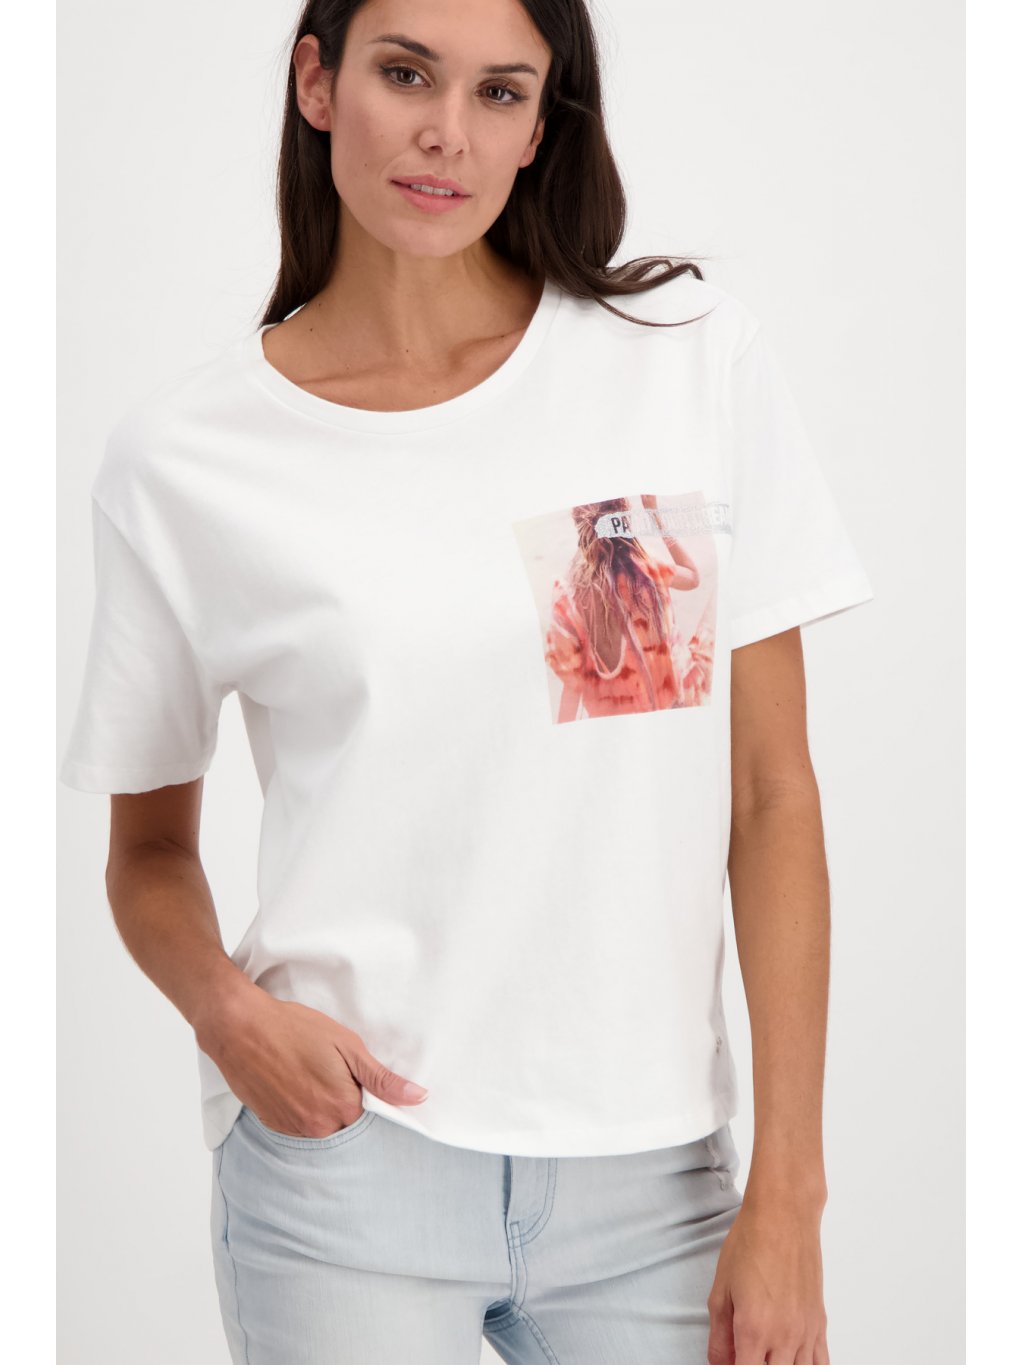 Tričko Monari 7117 krémové s grafikou v lososově růžové